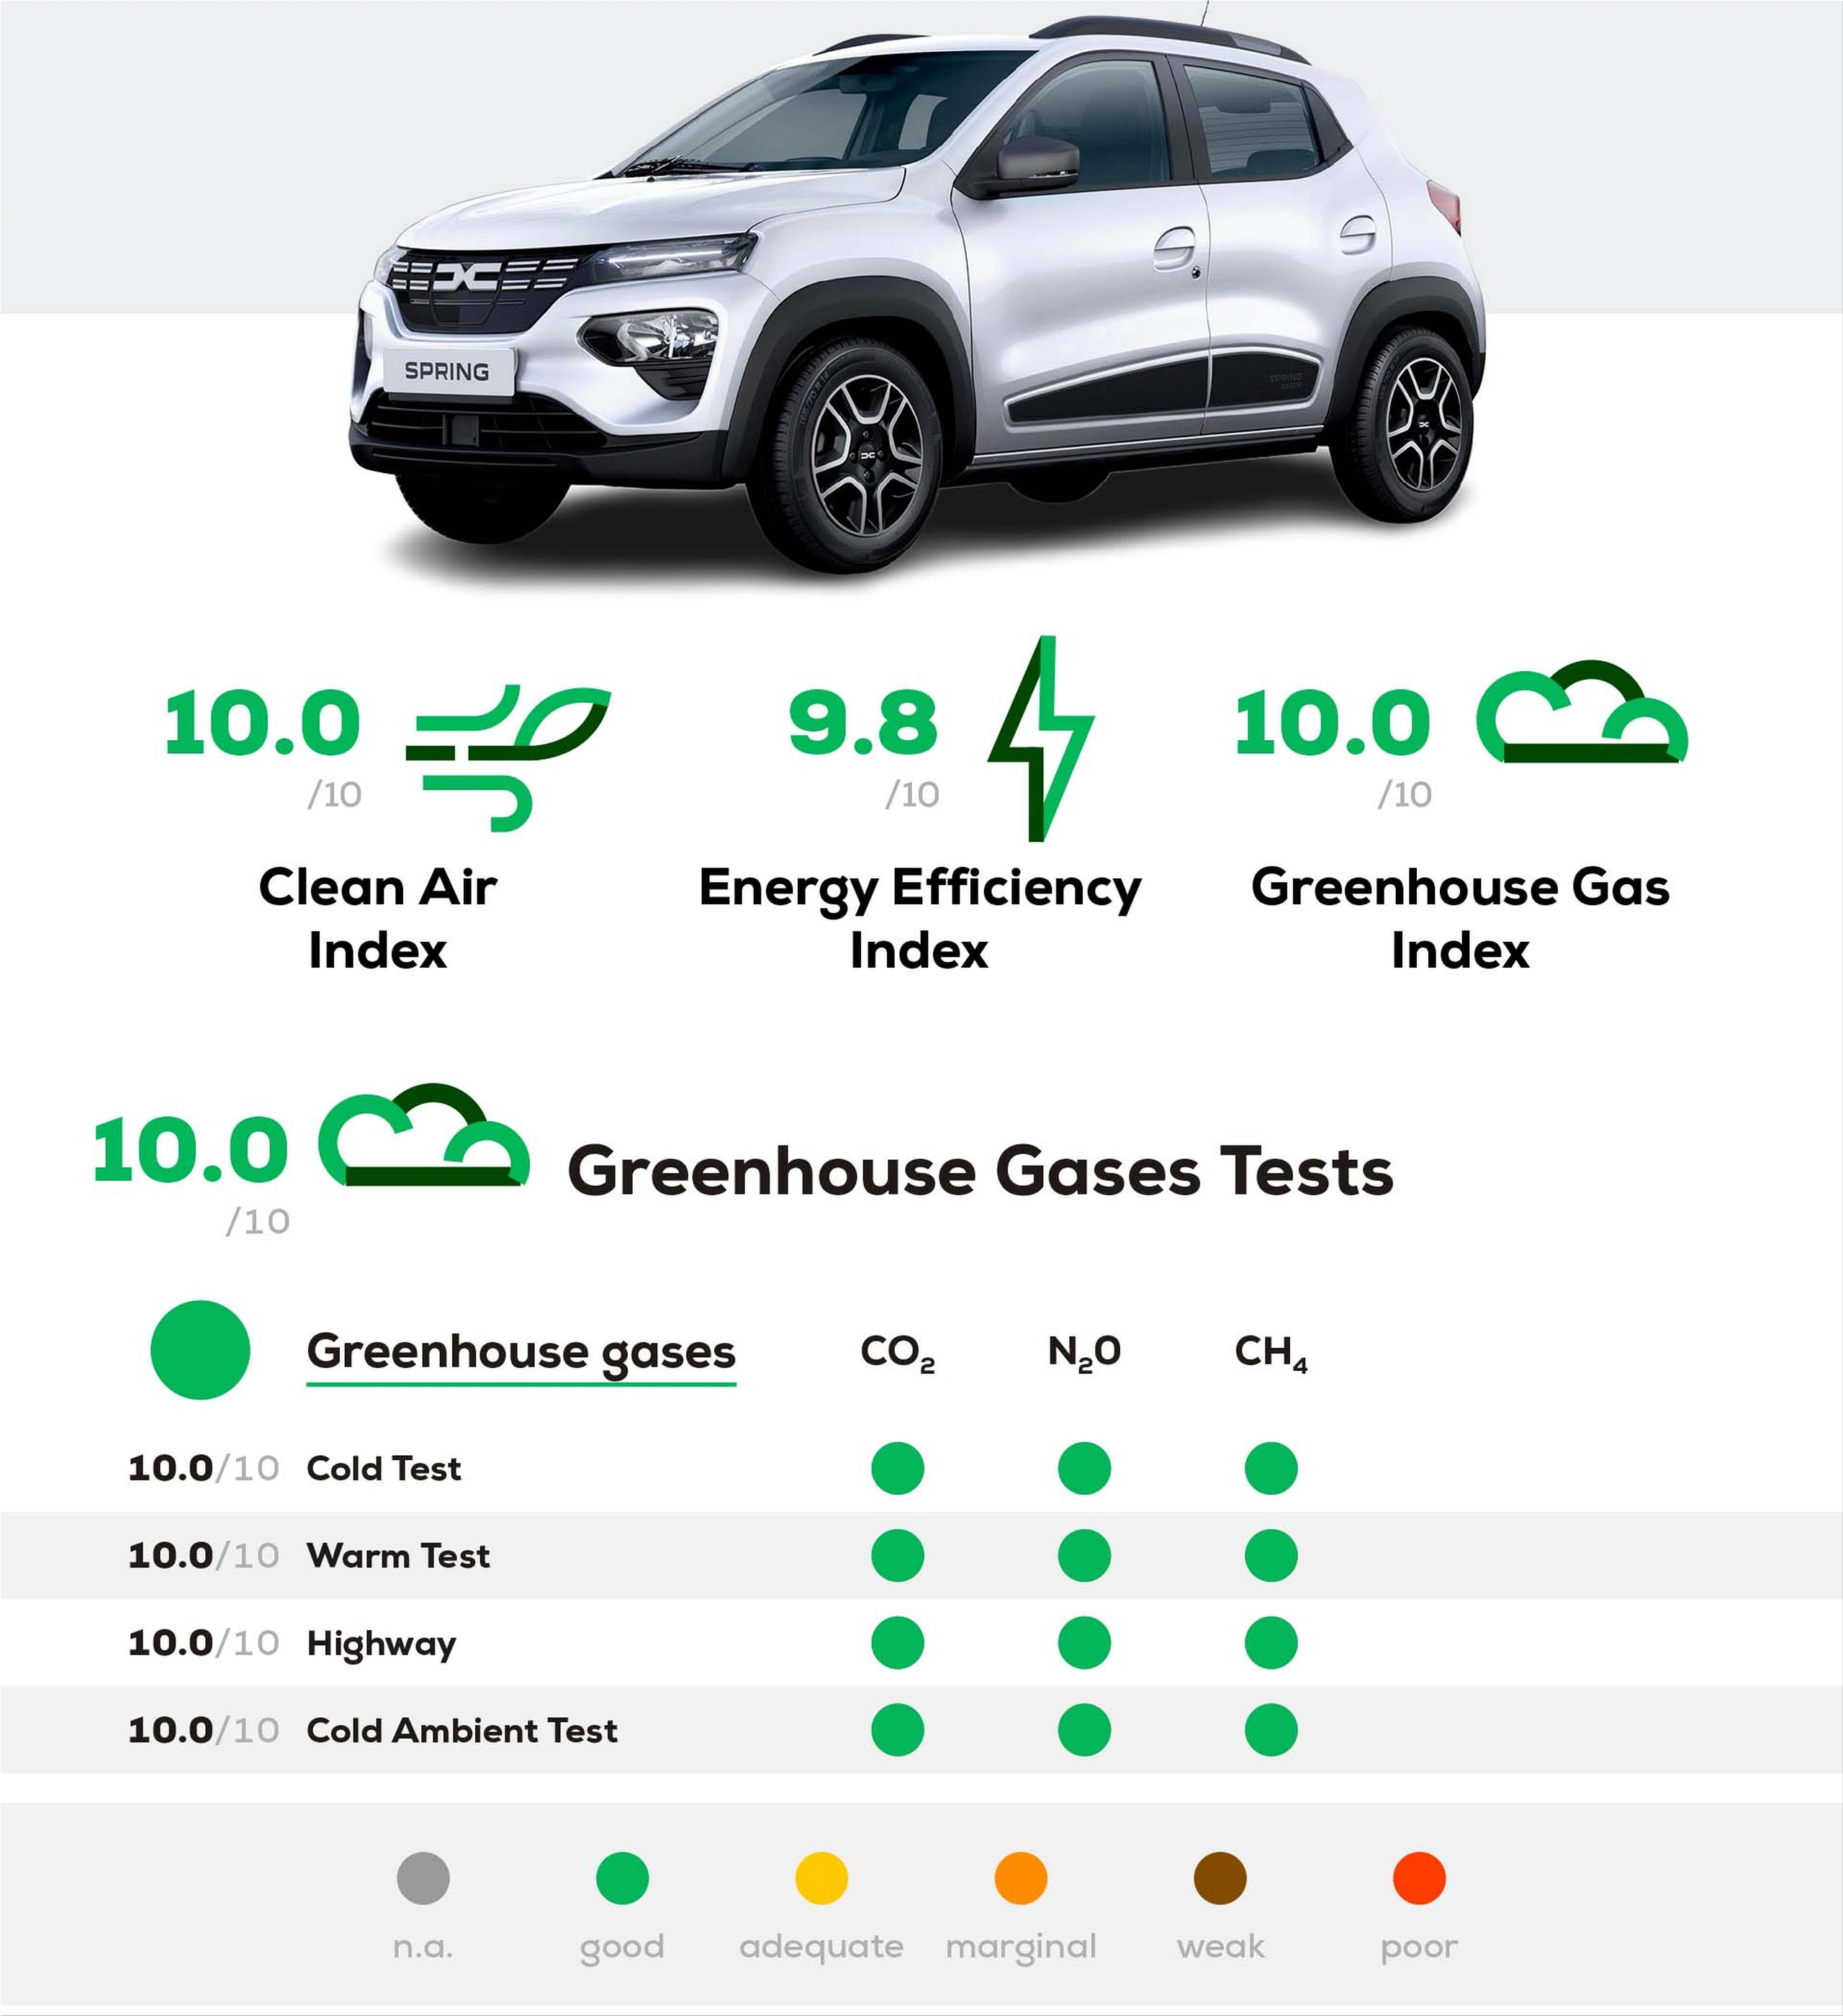 Dacia Spring Sales Figures